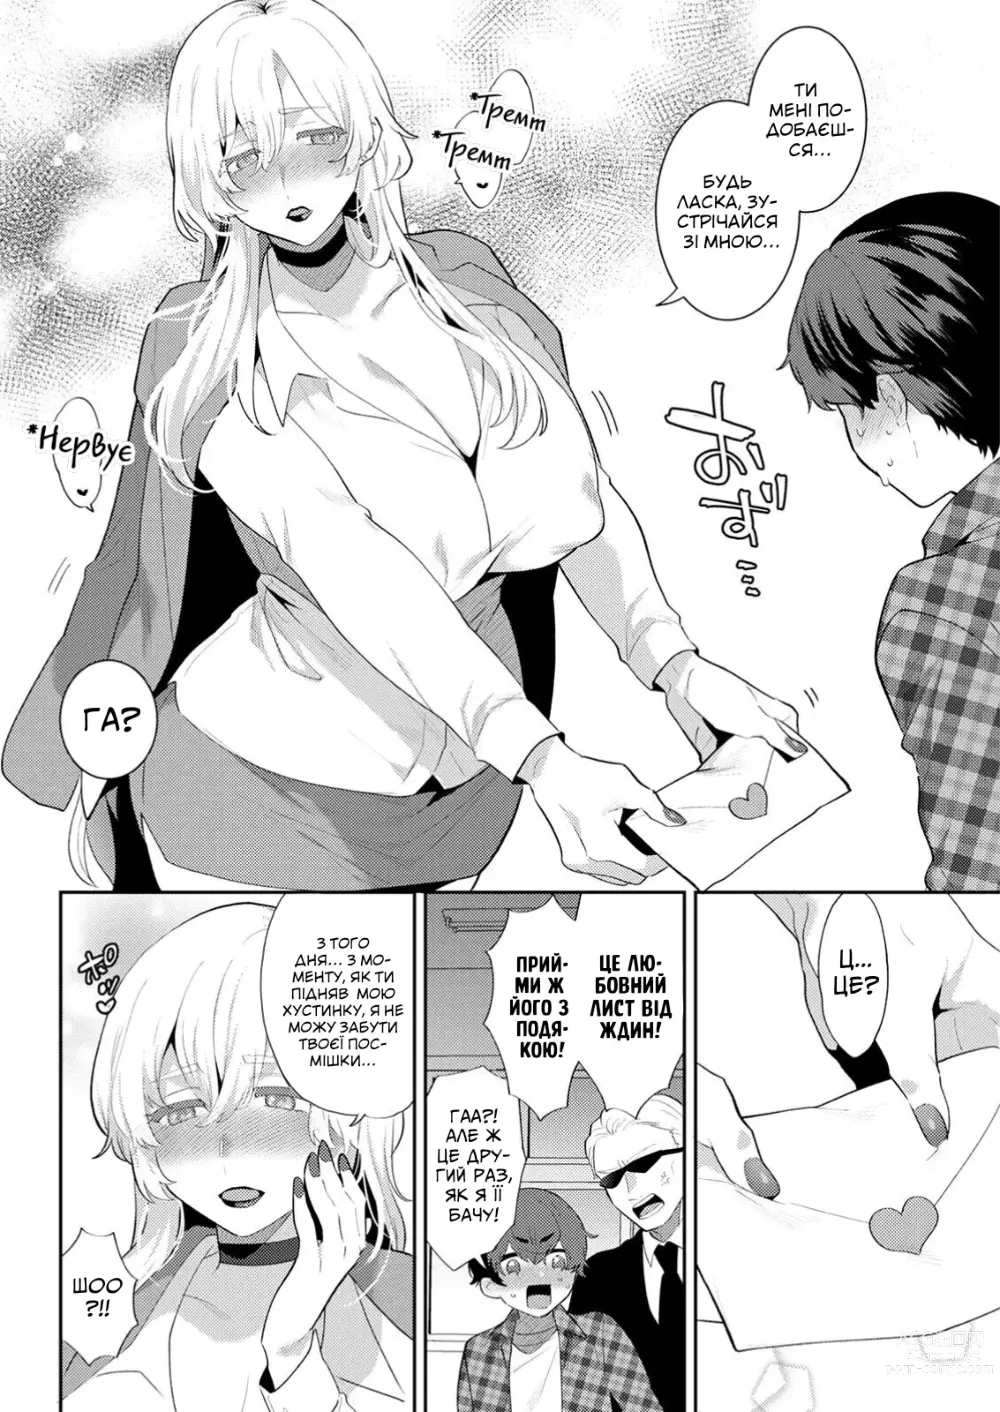 Page 4 of manga [Моґікі Хаямі] Я звичайний студент коледжу, але бос мафії шалено в мене закохана!!!